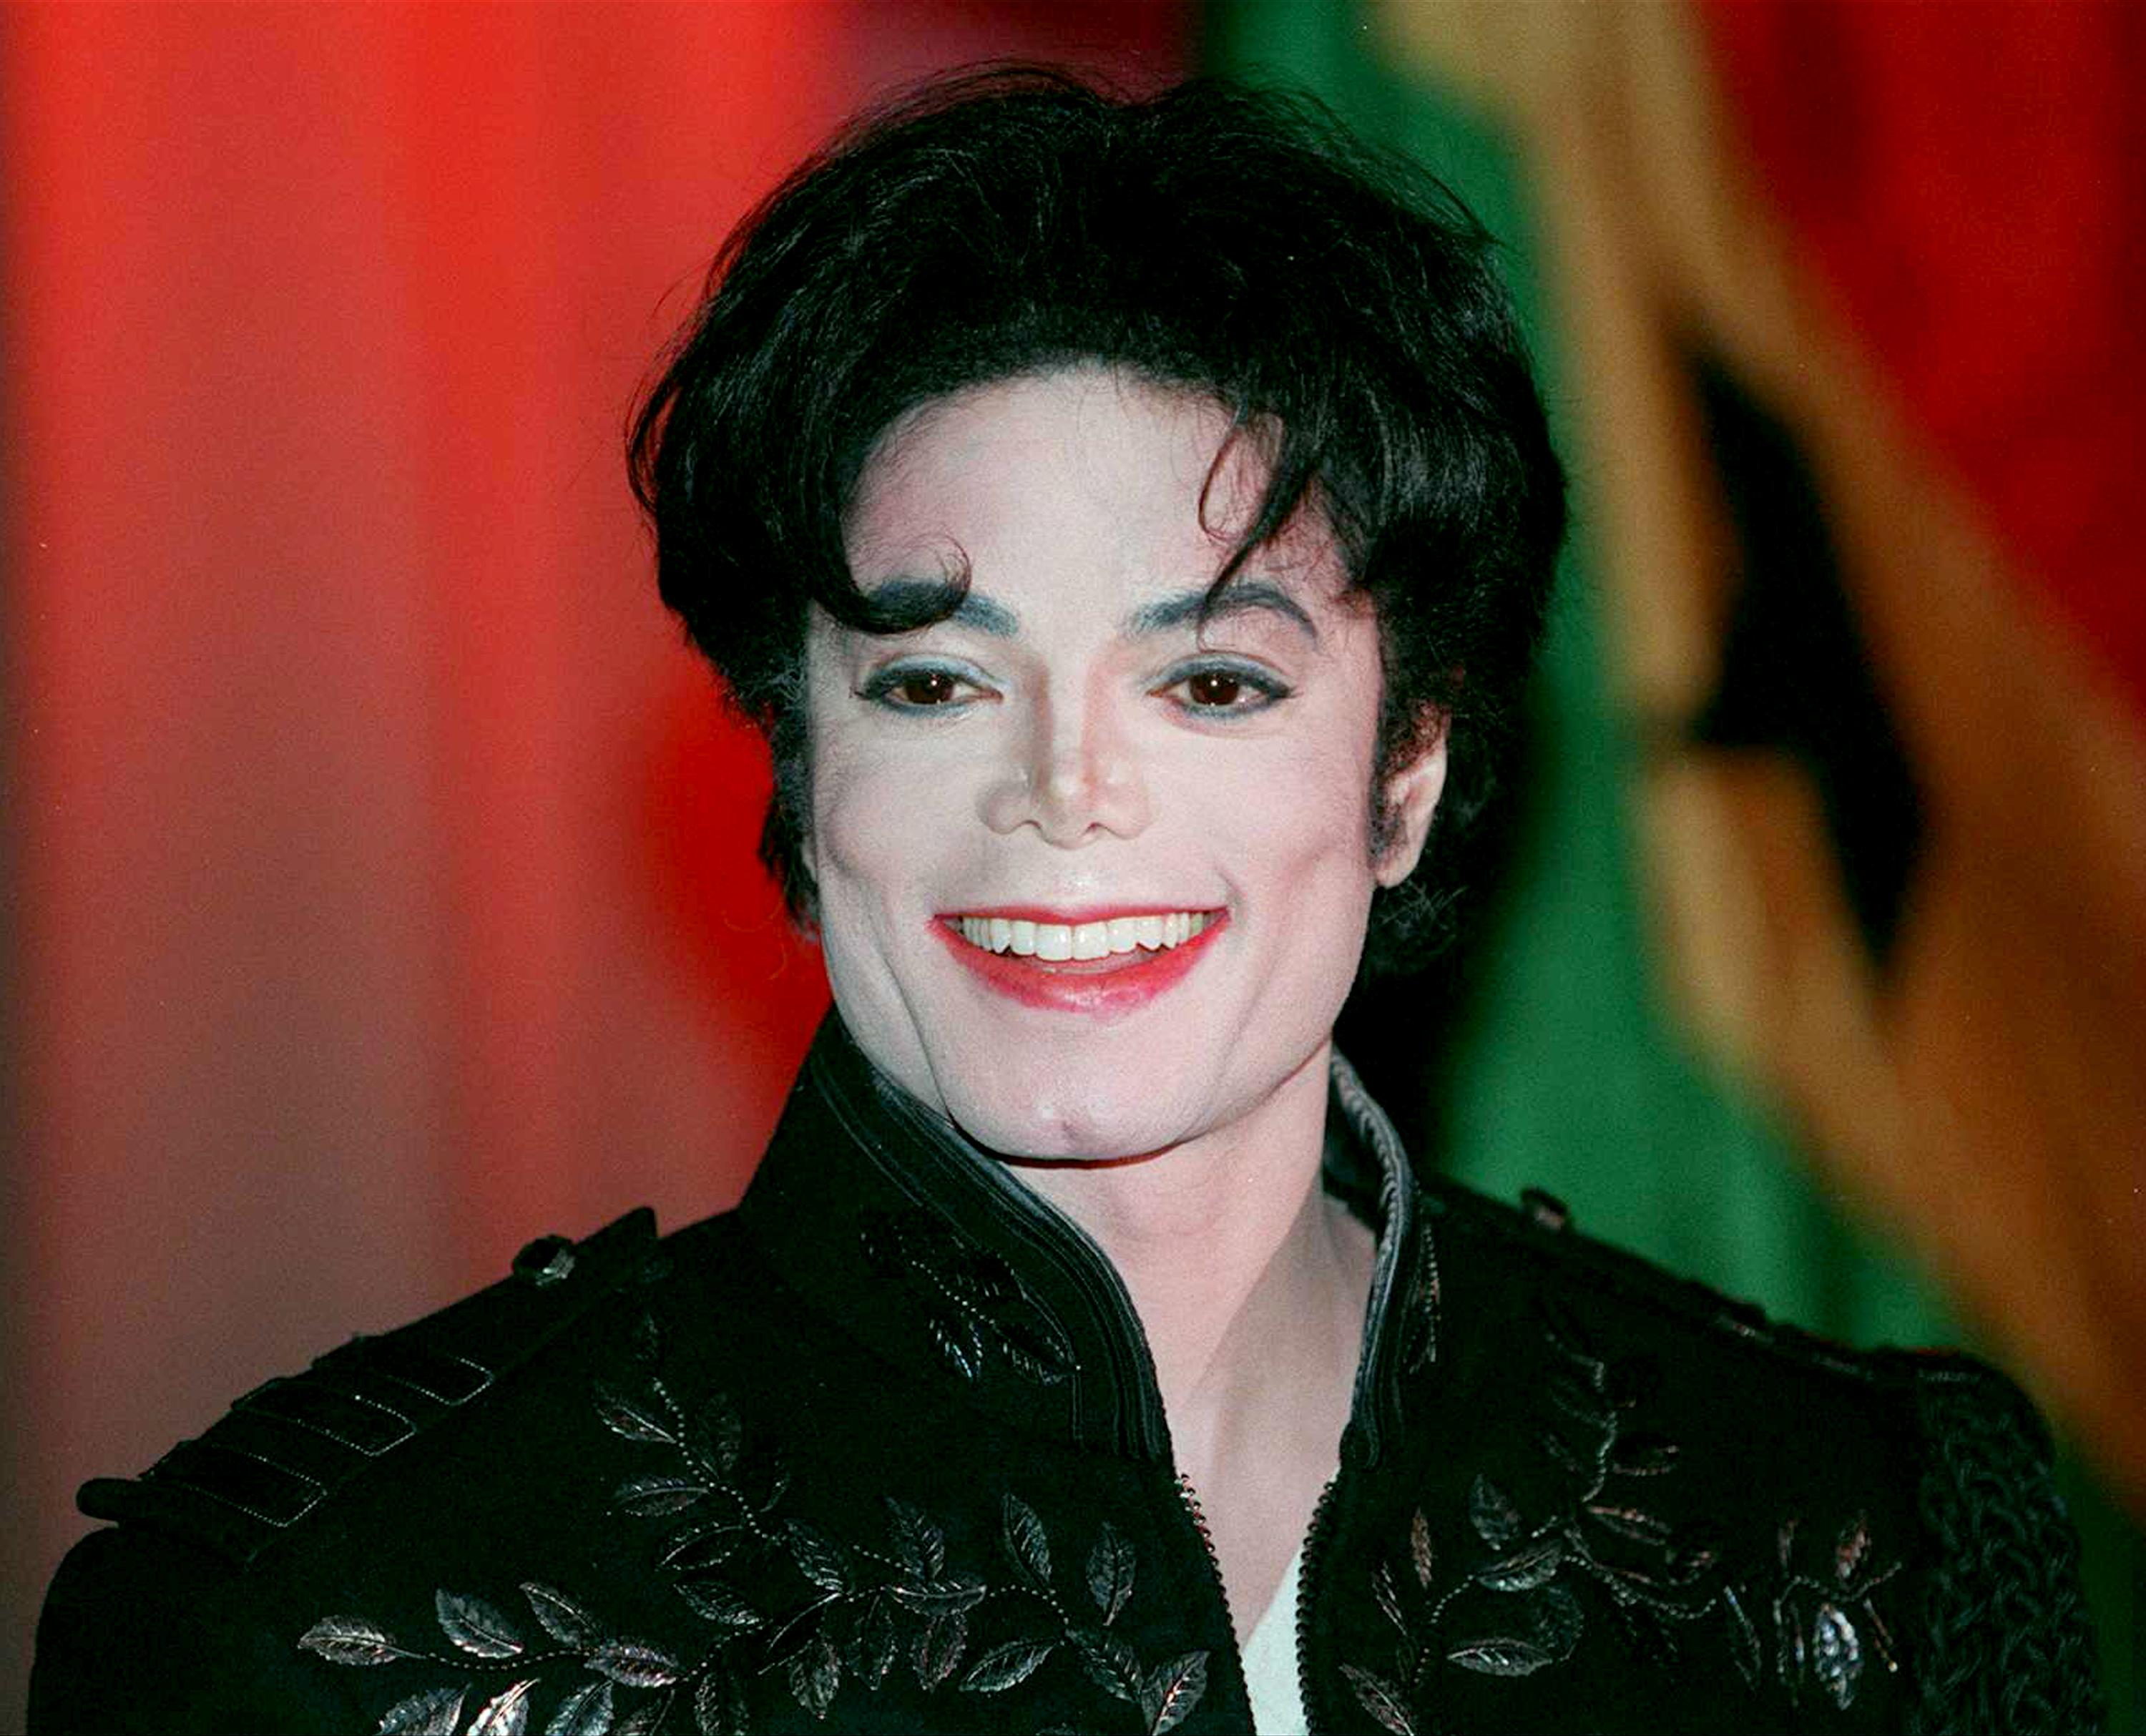 Michael Jackson en 1995 | Source : Getty Images